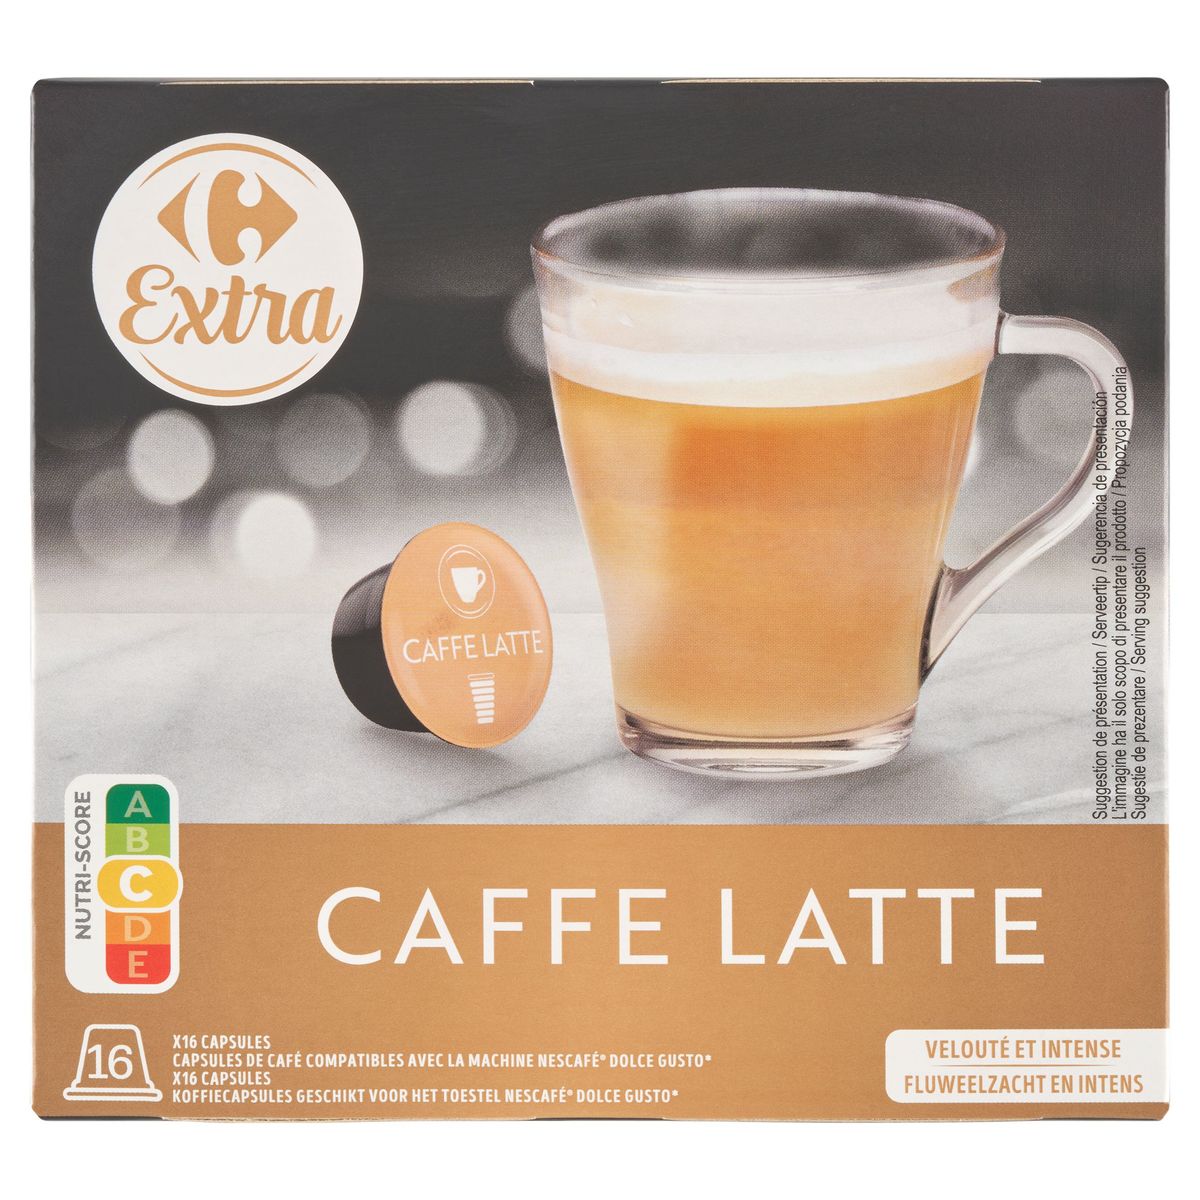 Carrefour Extra Caffe Latte 16 x 9.5 g